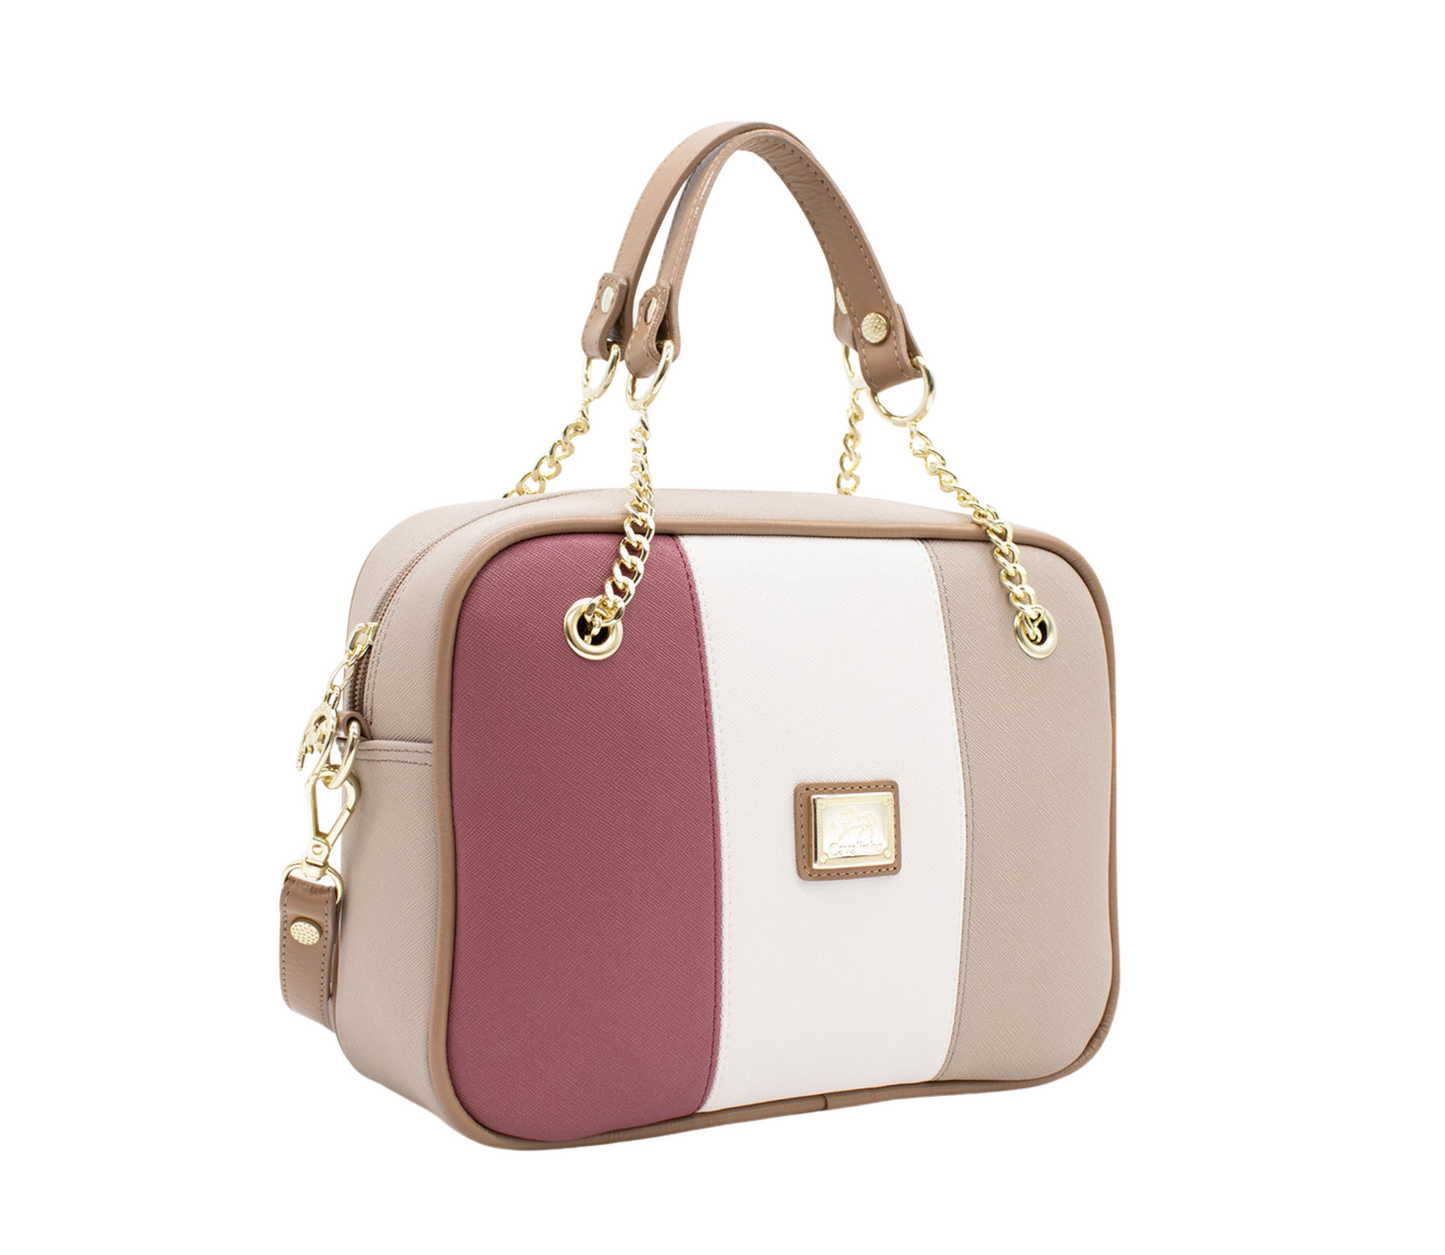 Cavalinho Allegro Handbag - Beige / White / Pink - 18480512.07_P02